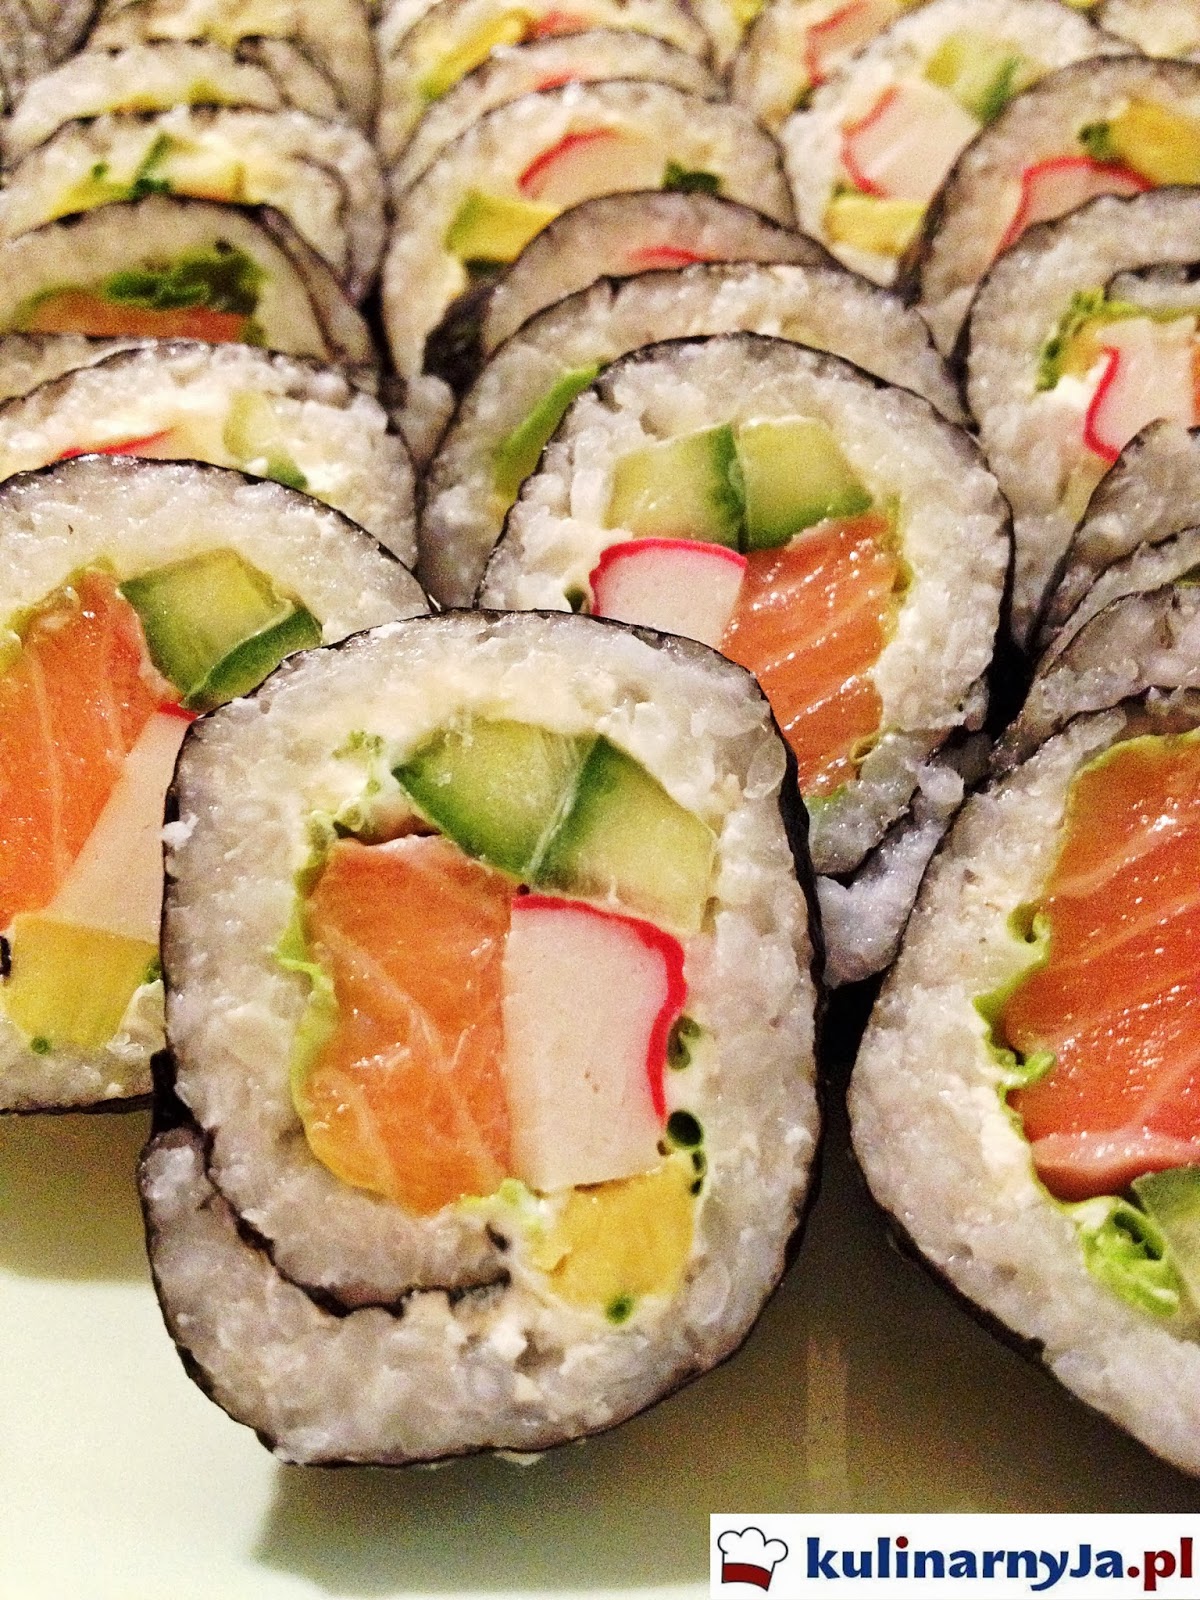 Sushi z łososiem, avocado, paluszkami krabowymi